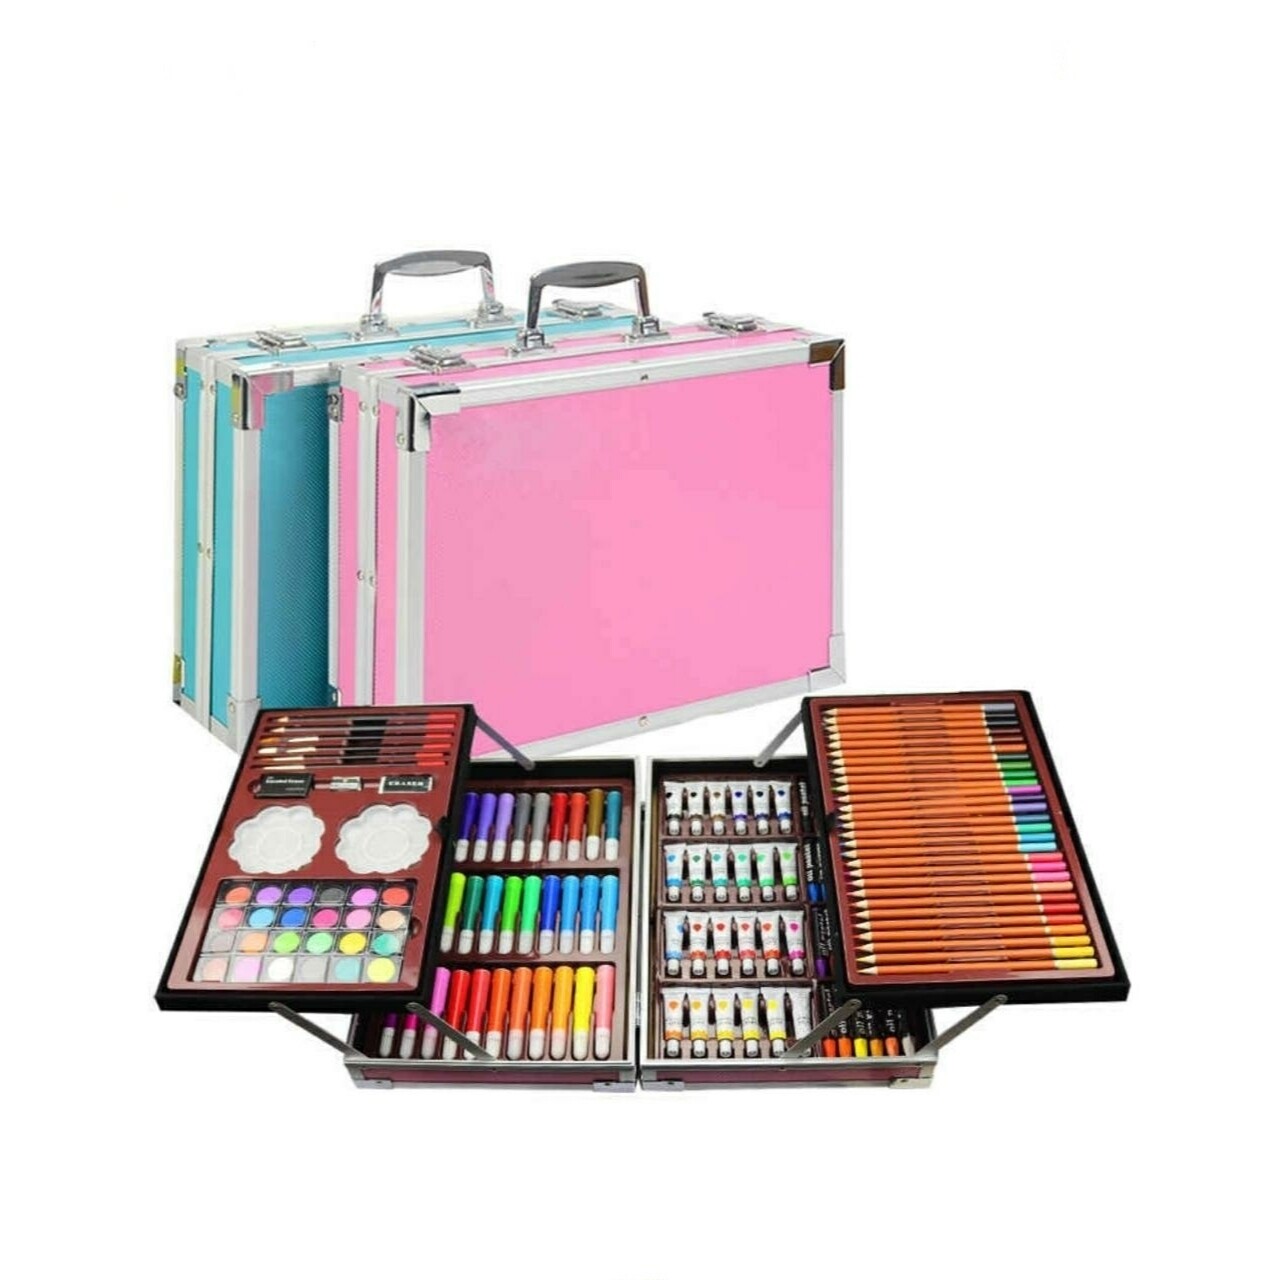 Художественный набор чемоданчик для рисования 145 предметов